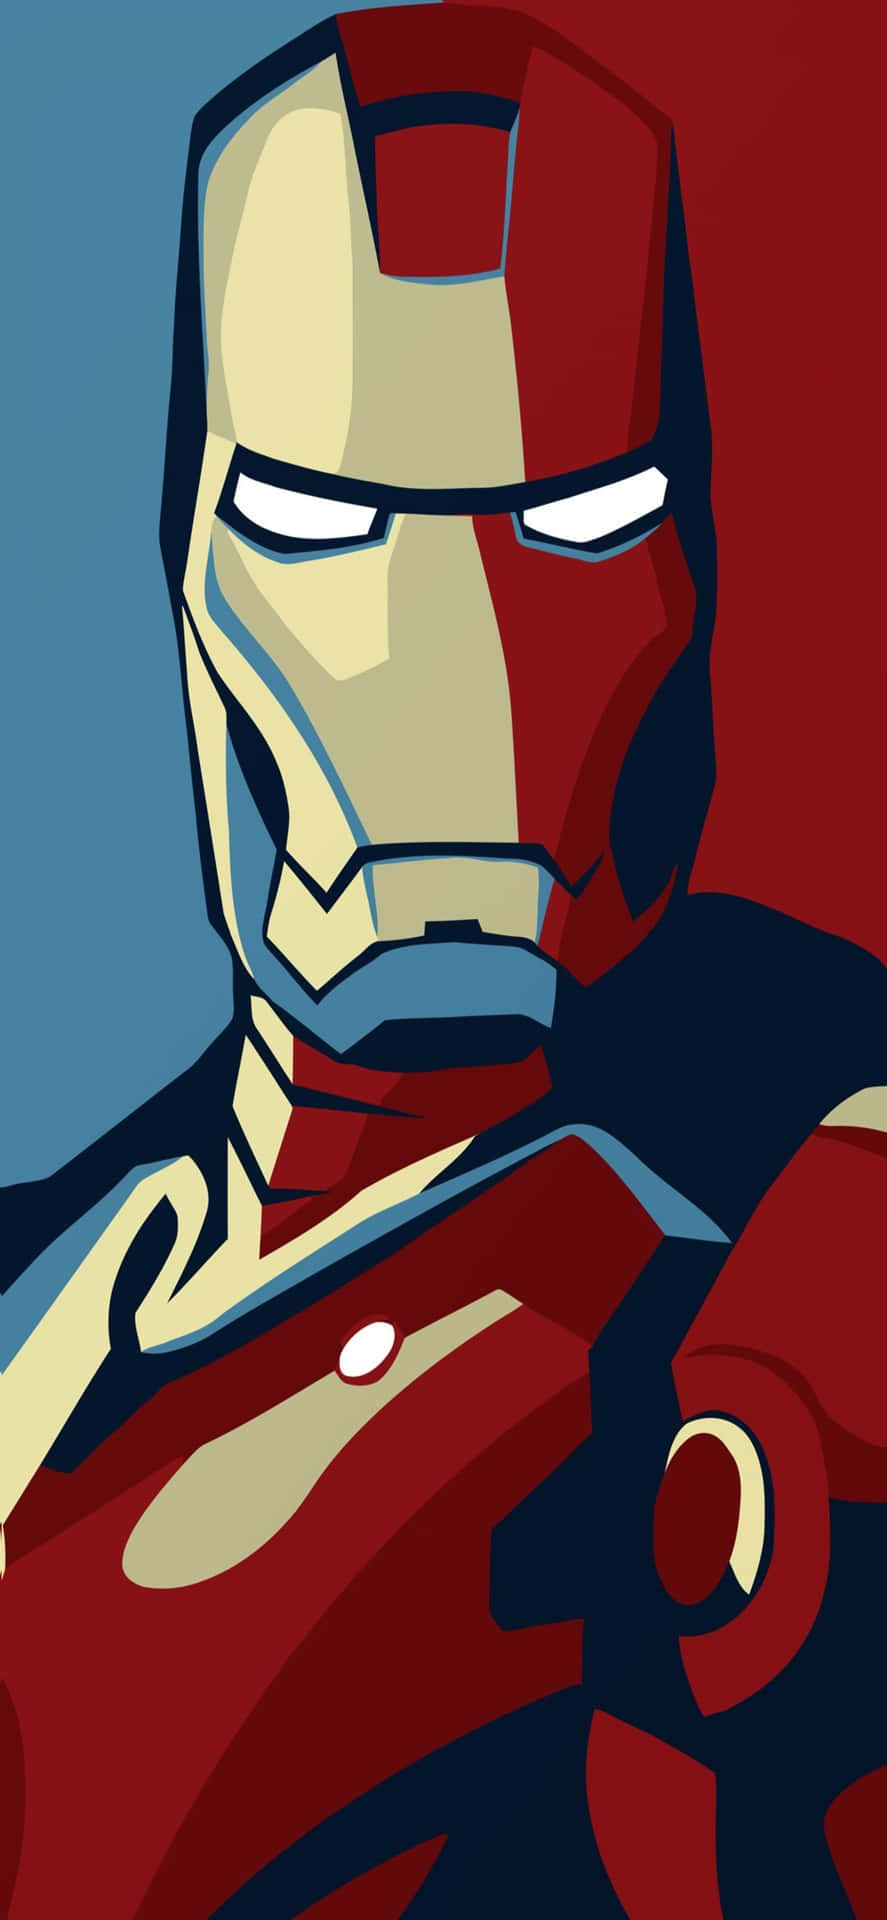 Iphonex Bakgrundsbild Med Iron Man I Blått Och Rött.